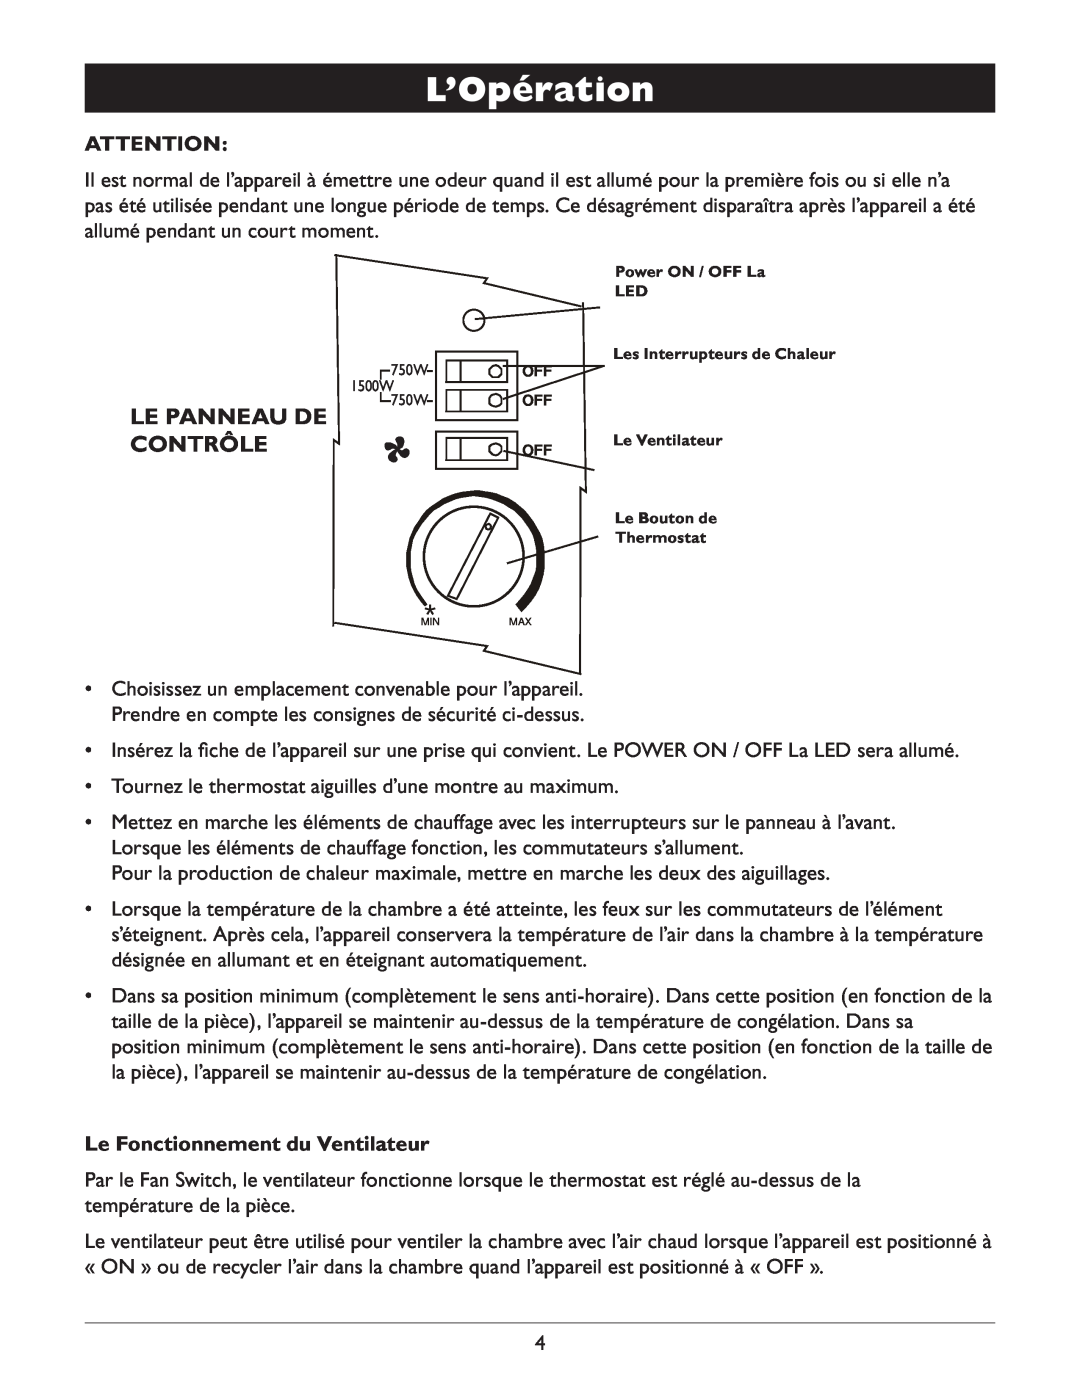 Amcor AMH9 owner manual L’Opération, Le Panneau de Contrôle, Le Fonctionnement du Ventilateur 